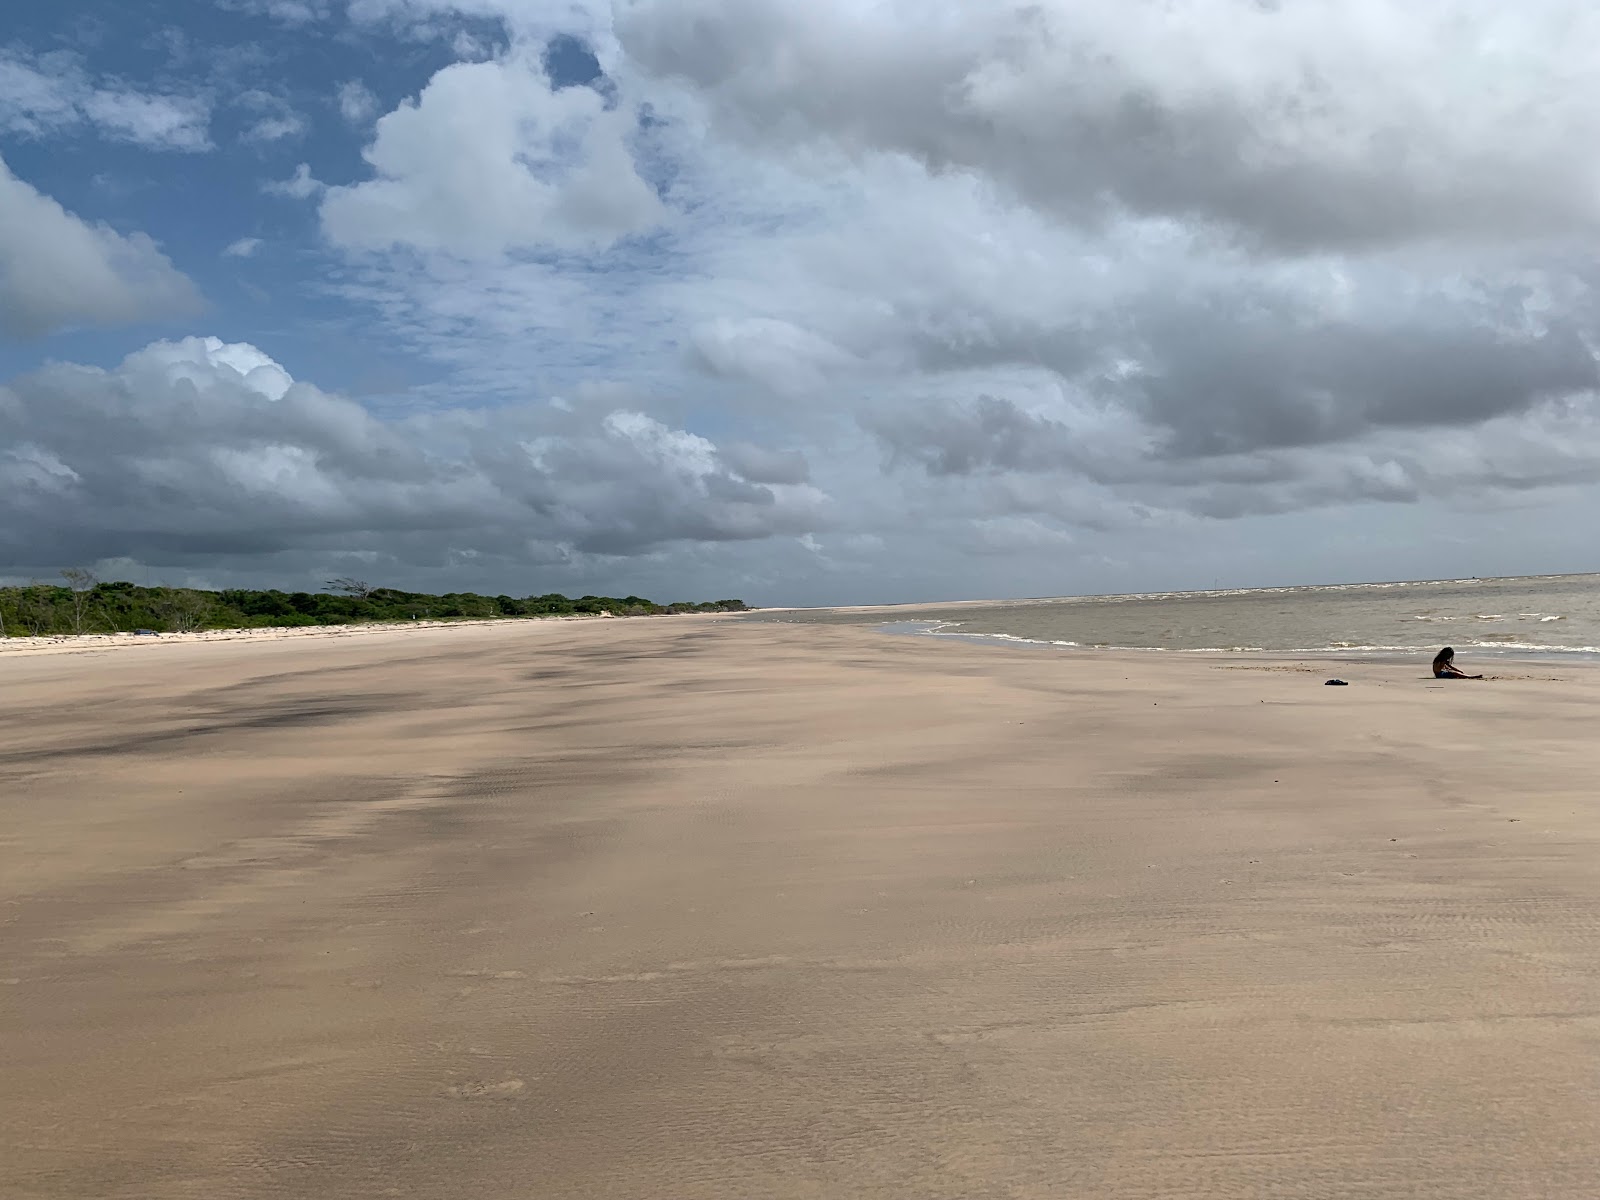 Zdjęcie Plaża Do Ceu z poziomem czystości wysoki